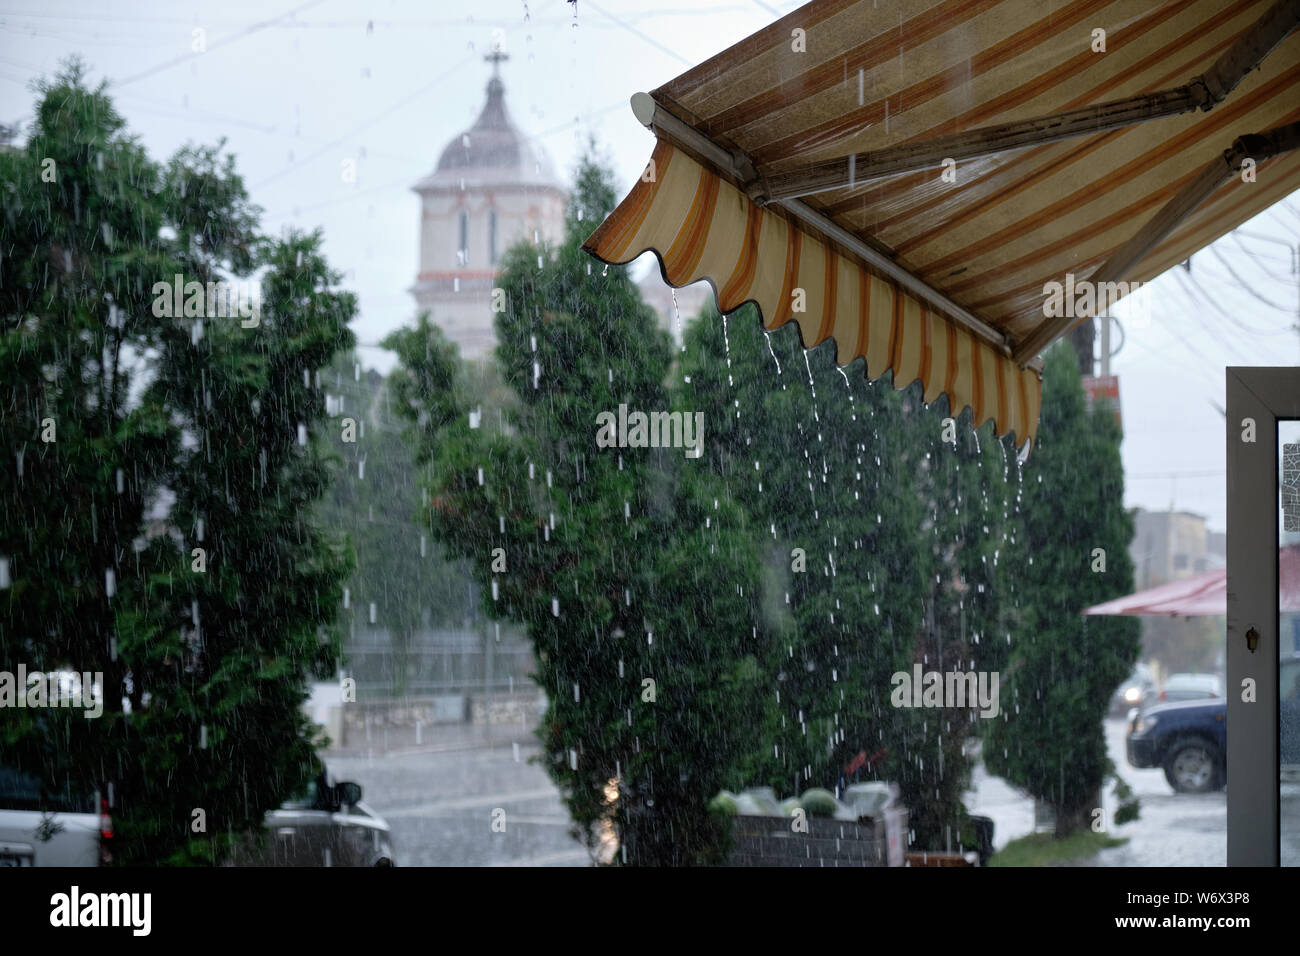 Store front Markise tropft bei starkem Regen Sturm. Street View mit Kirche im Hintergrund Stockfoto